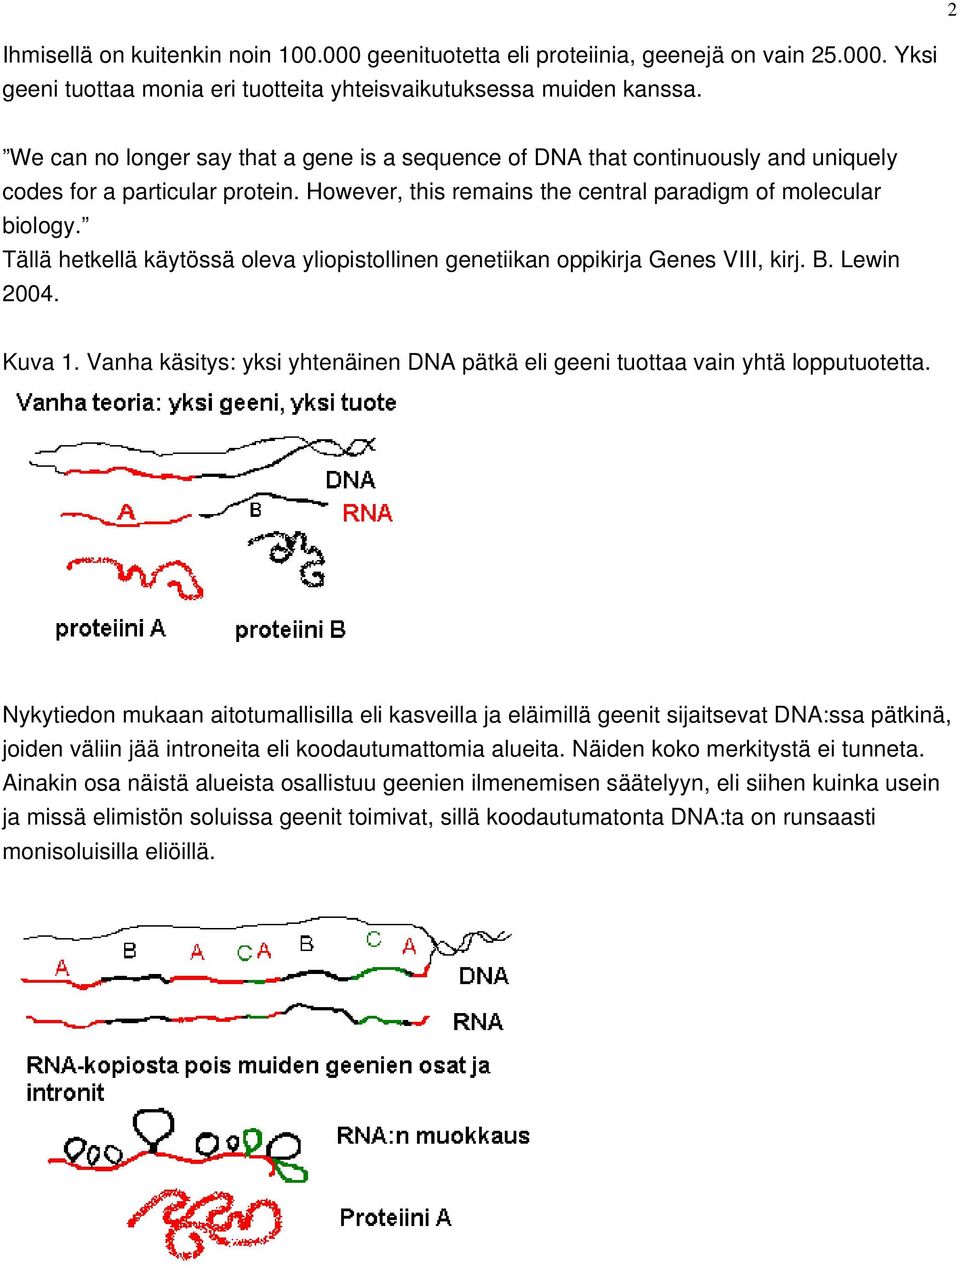 Tällä hetkellä käytössä oleva yliopistollinen genetiikan oppikirja Genes VIII, kirj. B. Lewin 2004. Kuva 1. Vanha käsitys: yksi yhtenäinen DNA pätkä eli geeni tuottaa vain yhtä lopputuotetta.